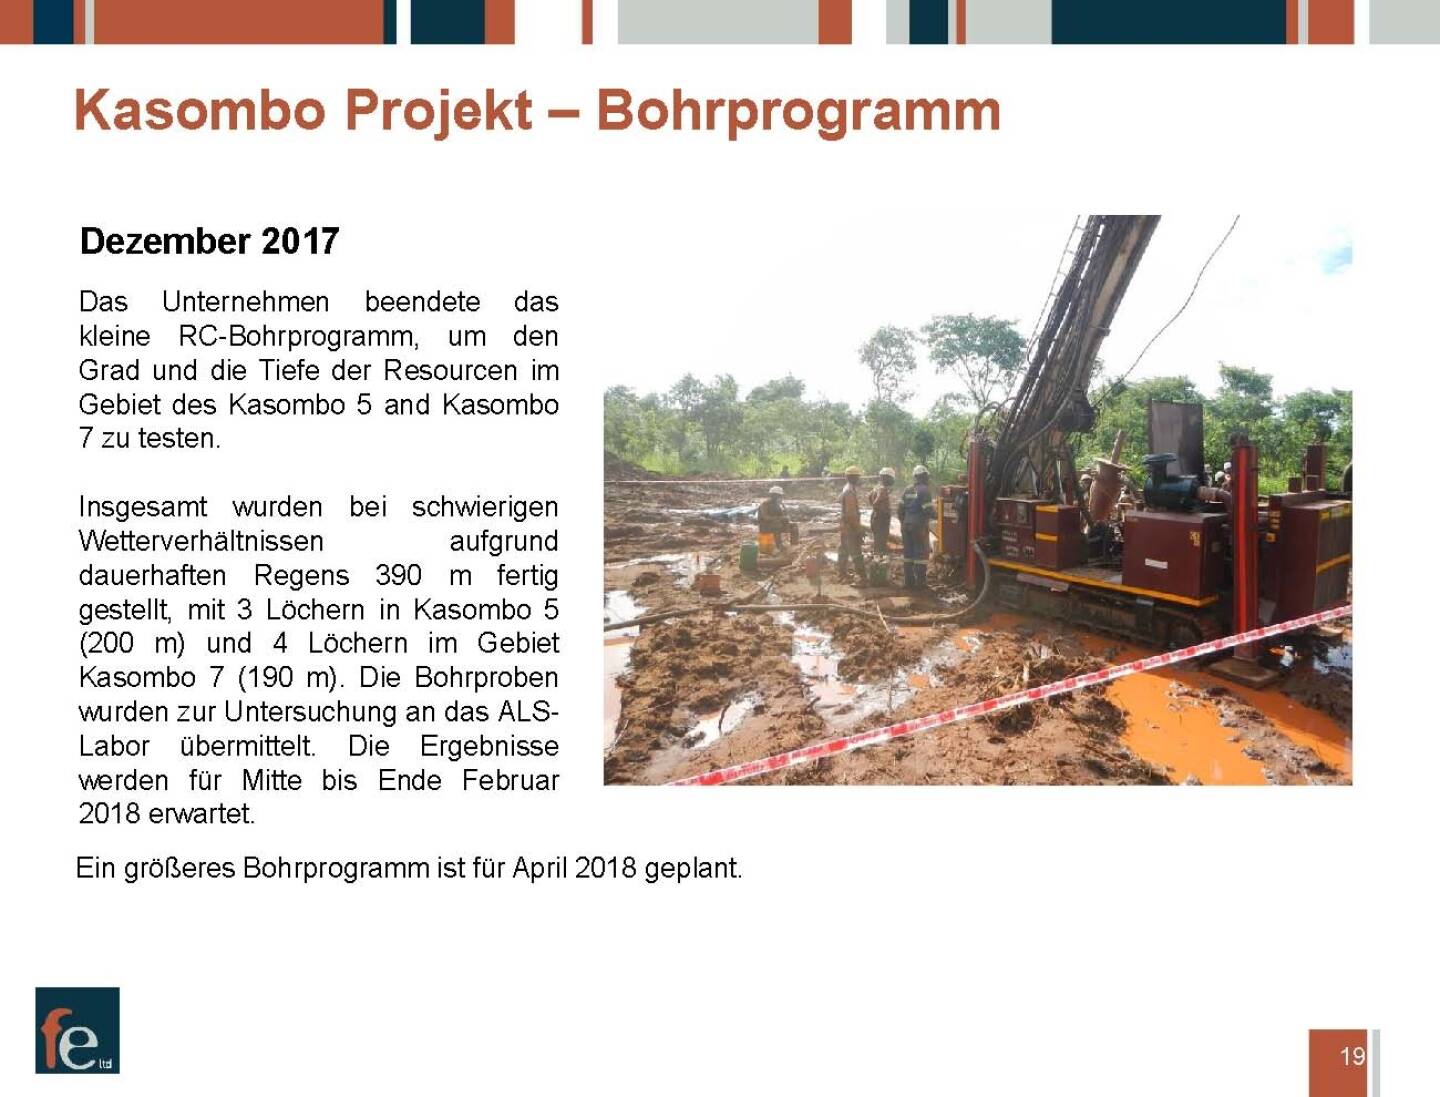 Präsentation FE Limited - Kasombo Projekt Bohrprogramm